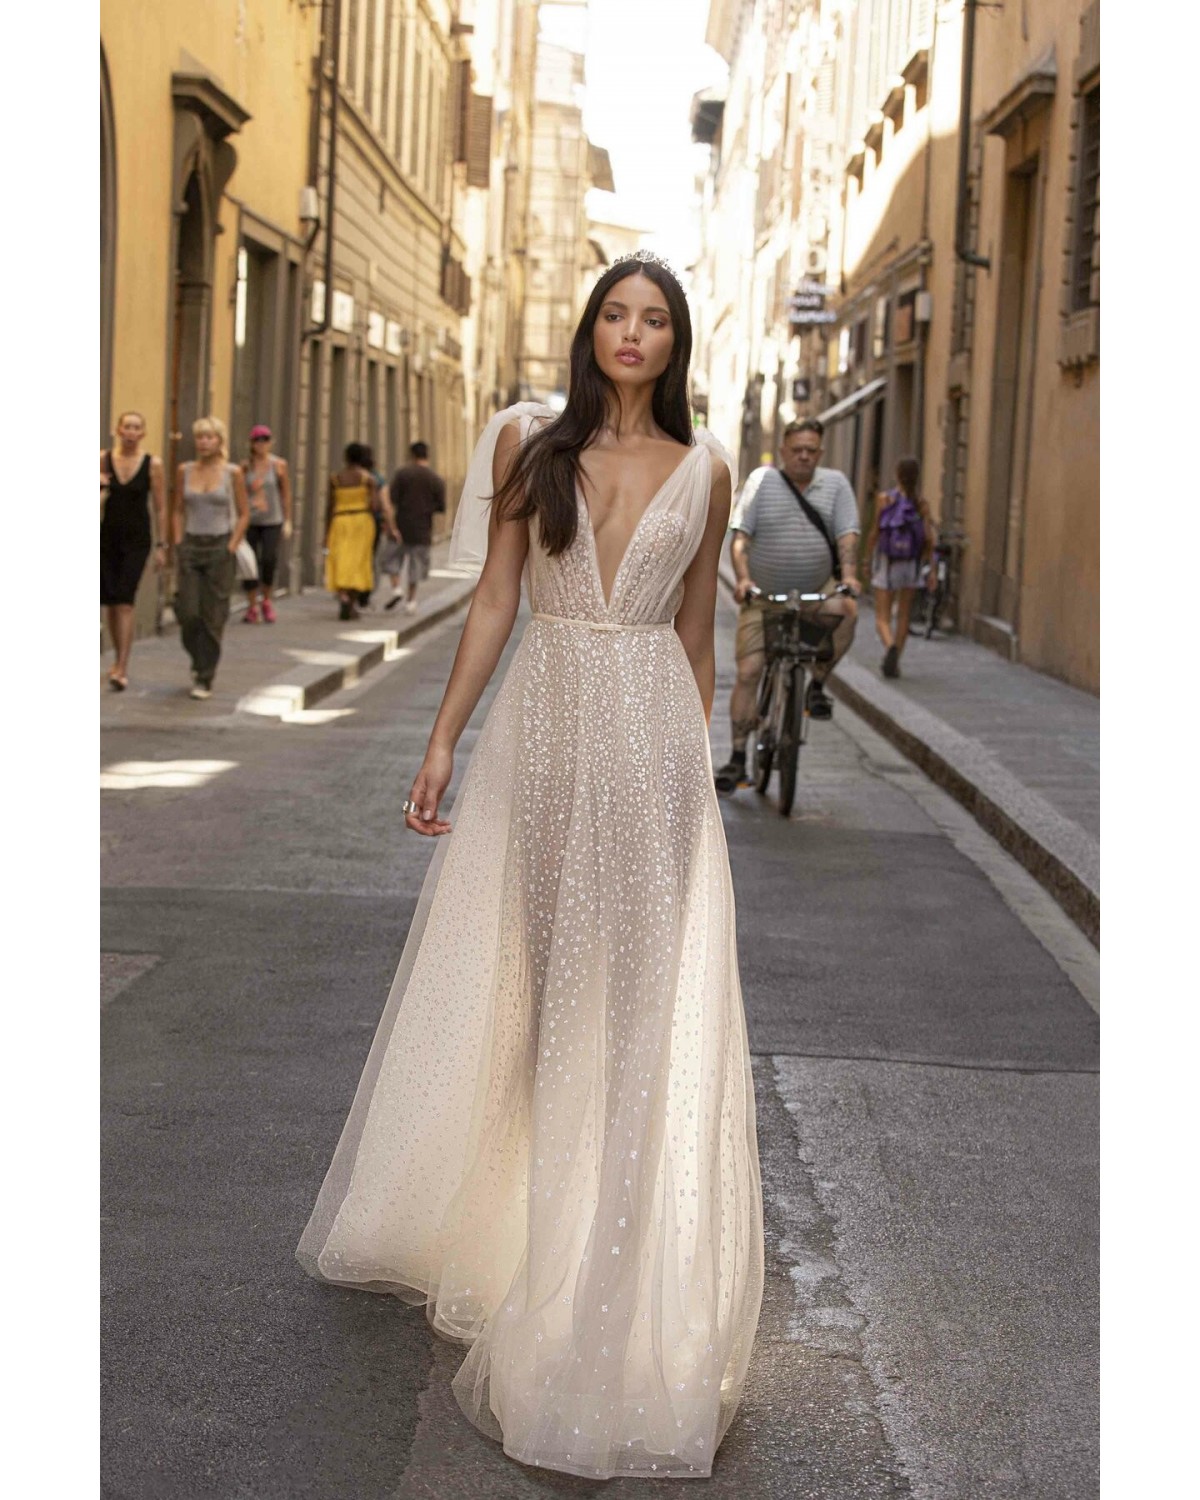 Fernanda - abito da sposa collezione 2020 - Muse by Berta